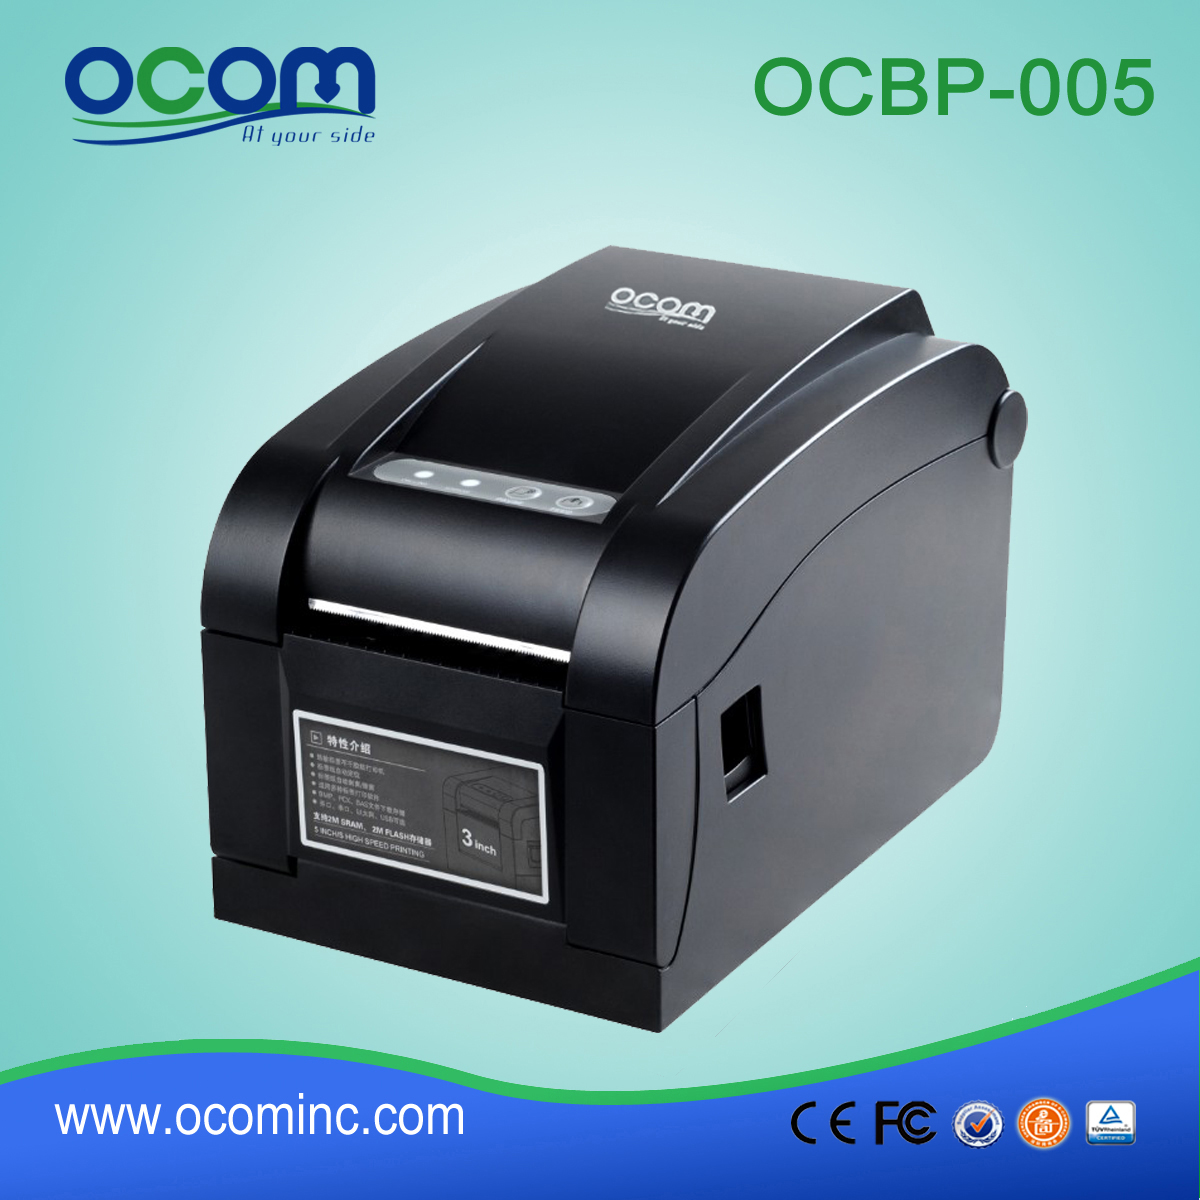 OCBP-005-URL 3inch Breite Papier Thermal Barcode-Etikettendrucker mit Abziehfunktion